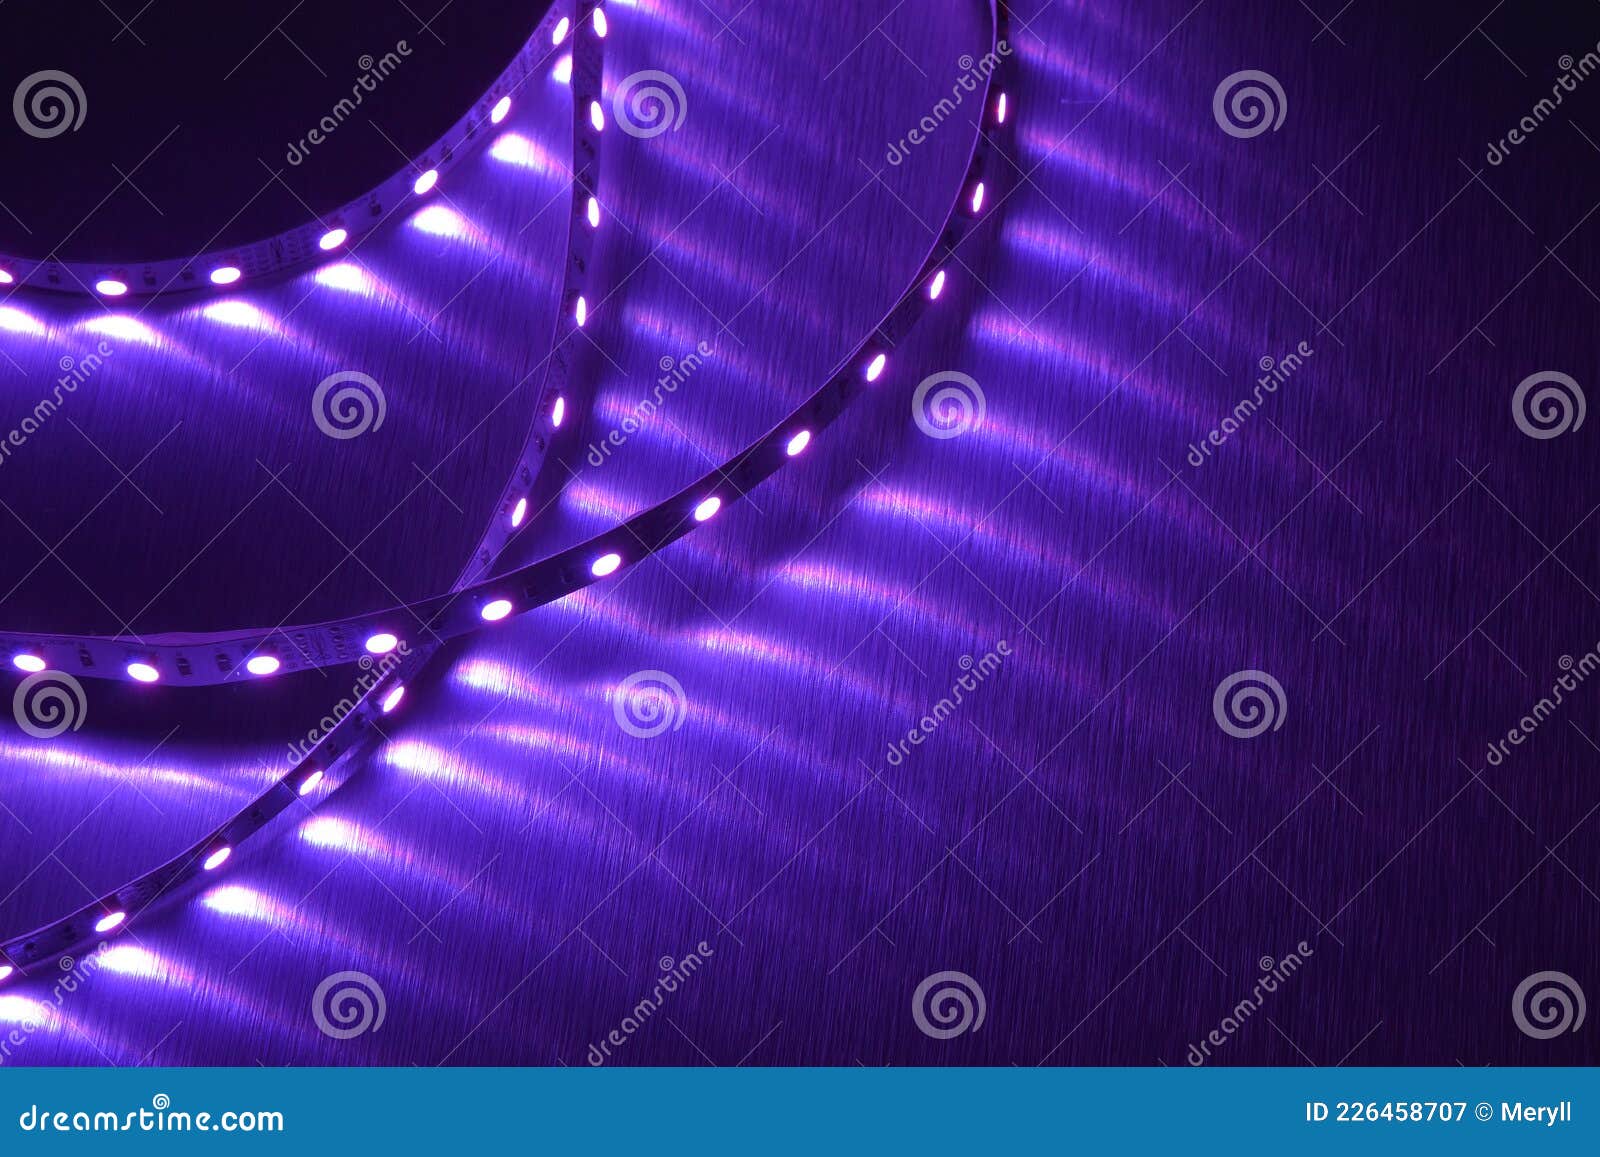 violet light rgb led diodes